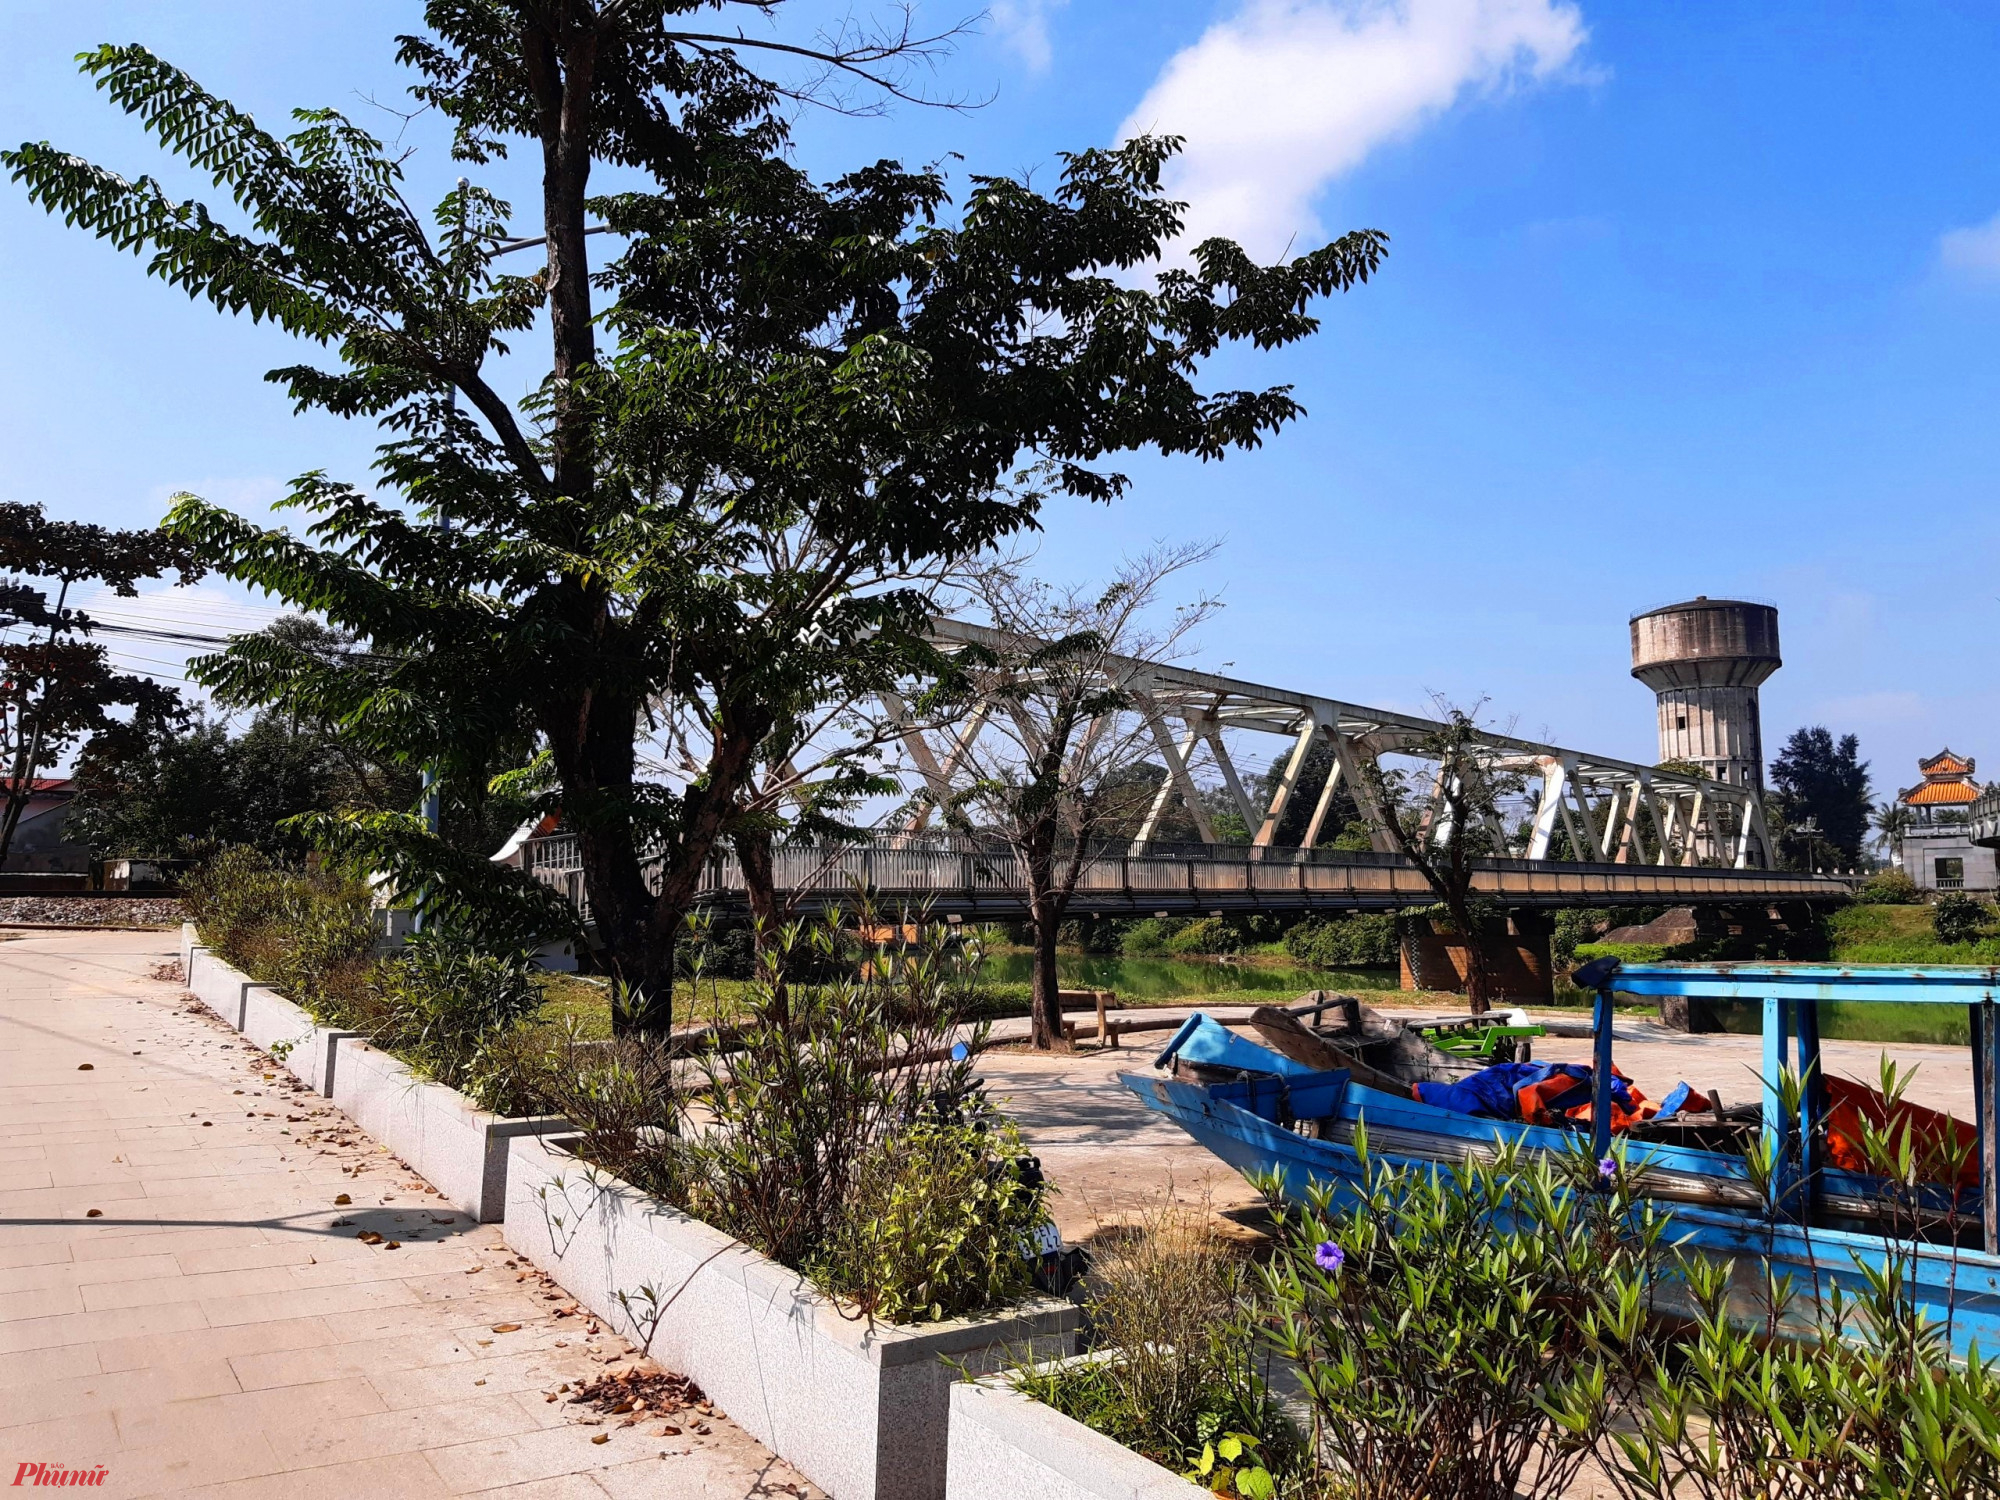 Bắc qua sông Hương ở góc Tây Nam kinh thành Huế, cầu sắt Bạch Hổ là tên thường gọi của cây cầu đường sắt có tuổi đời một thế kỷ ở đất Cố đô.